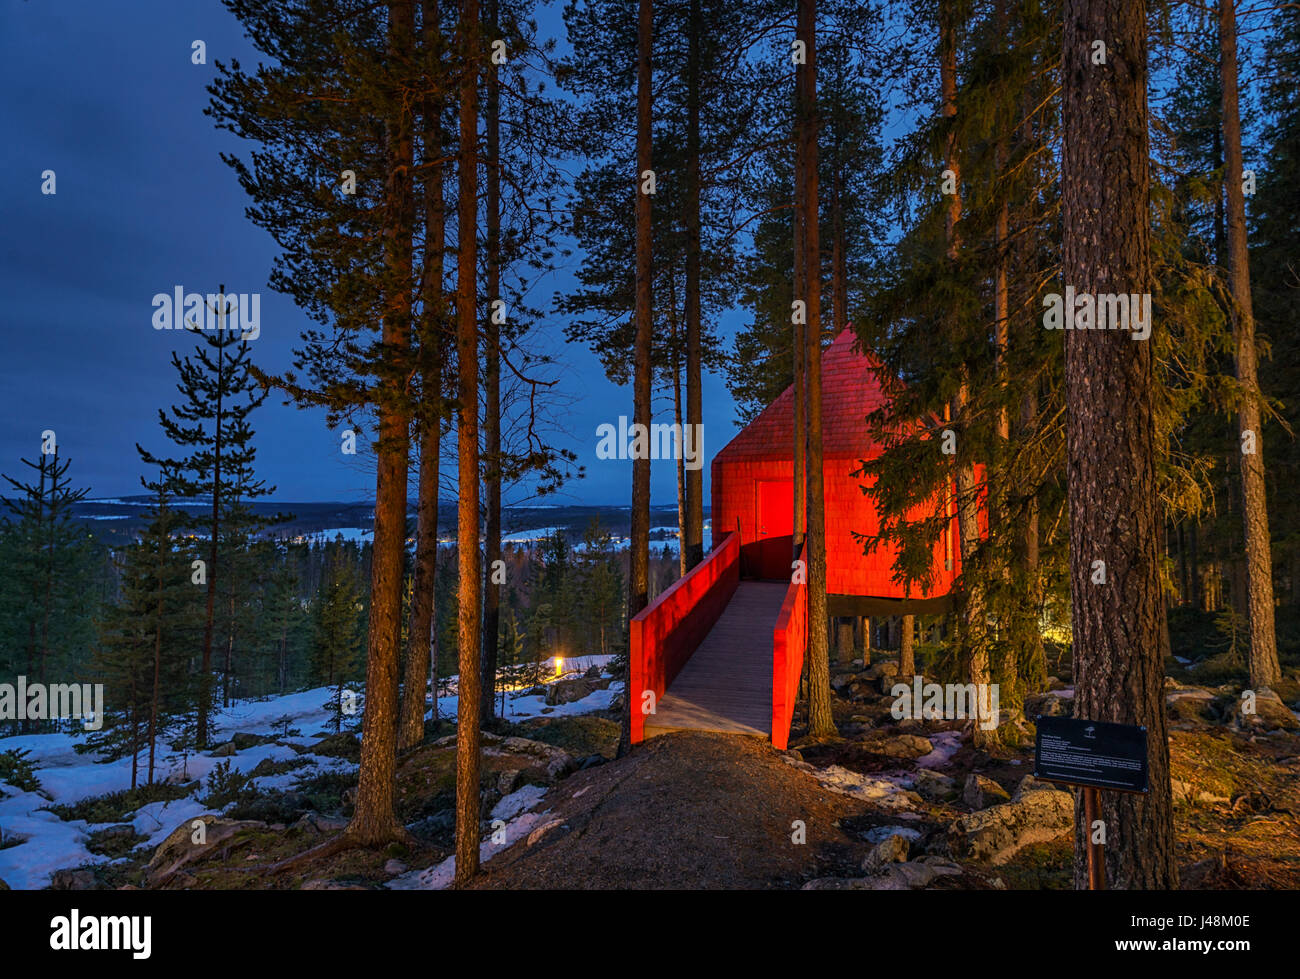 Accommodation dans les bois, connu comme le cône bleu, à l'arbre Hôtel en Laponie, Suède Banque D'Images